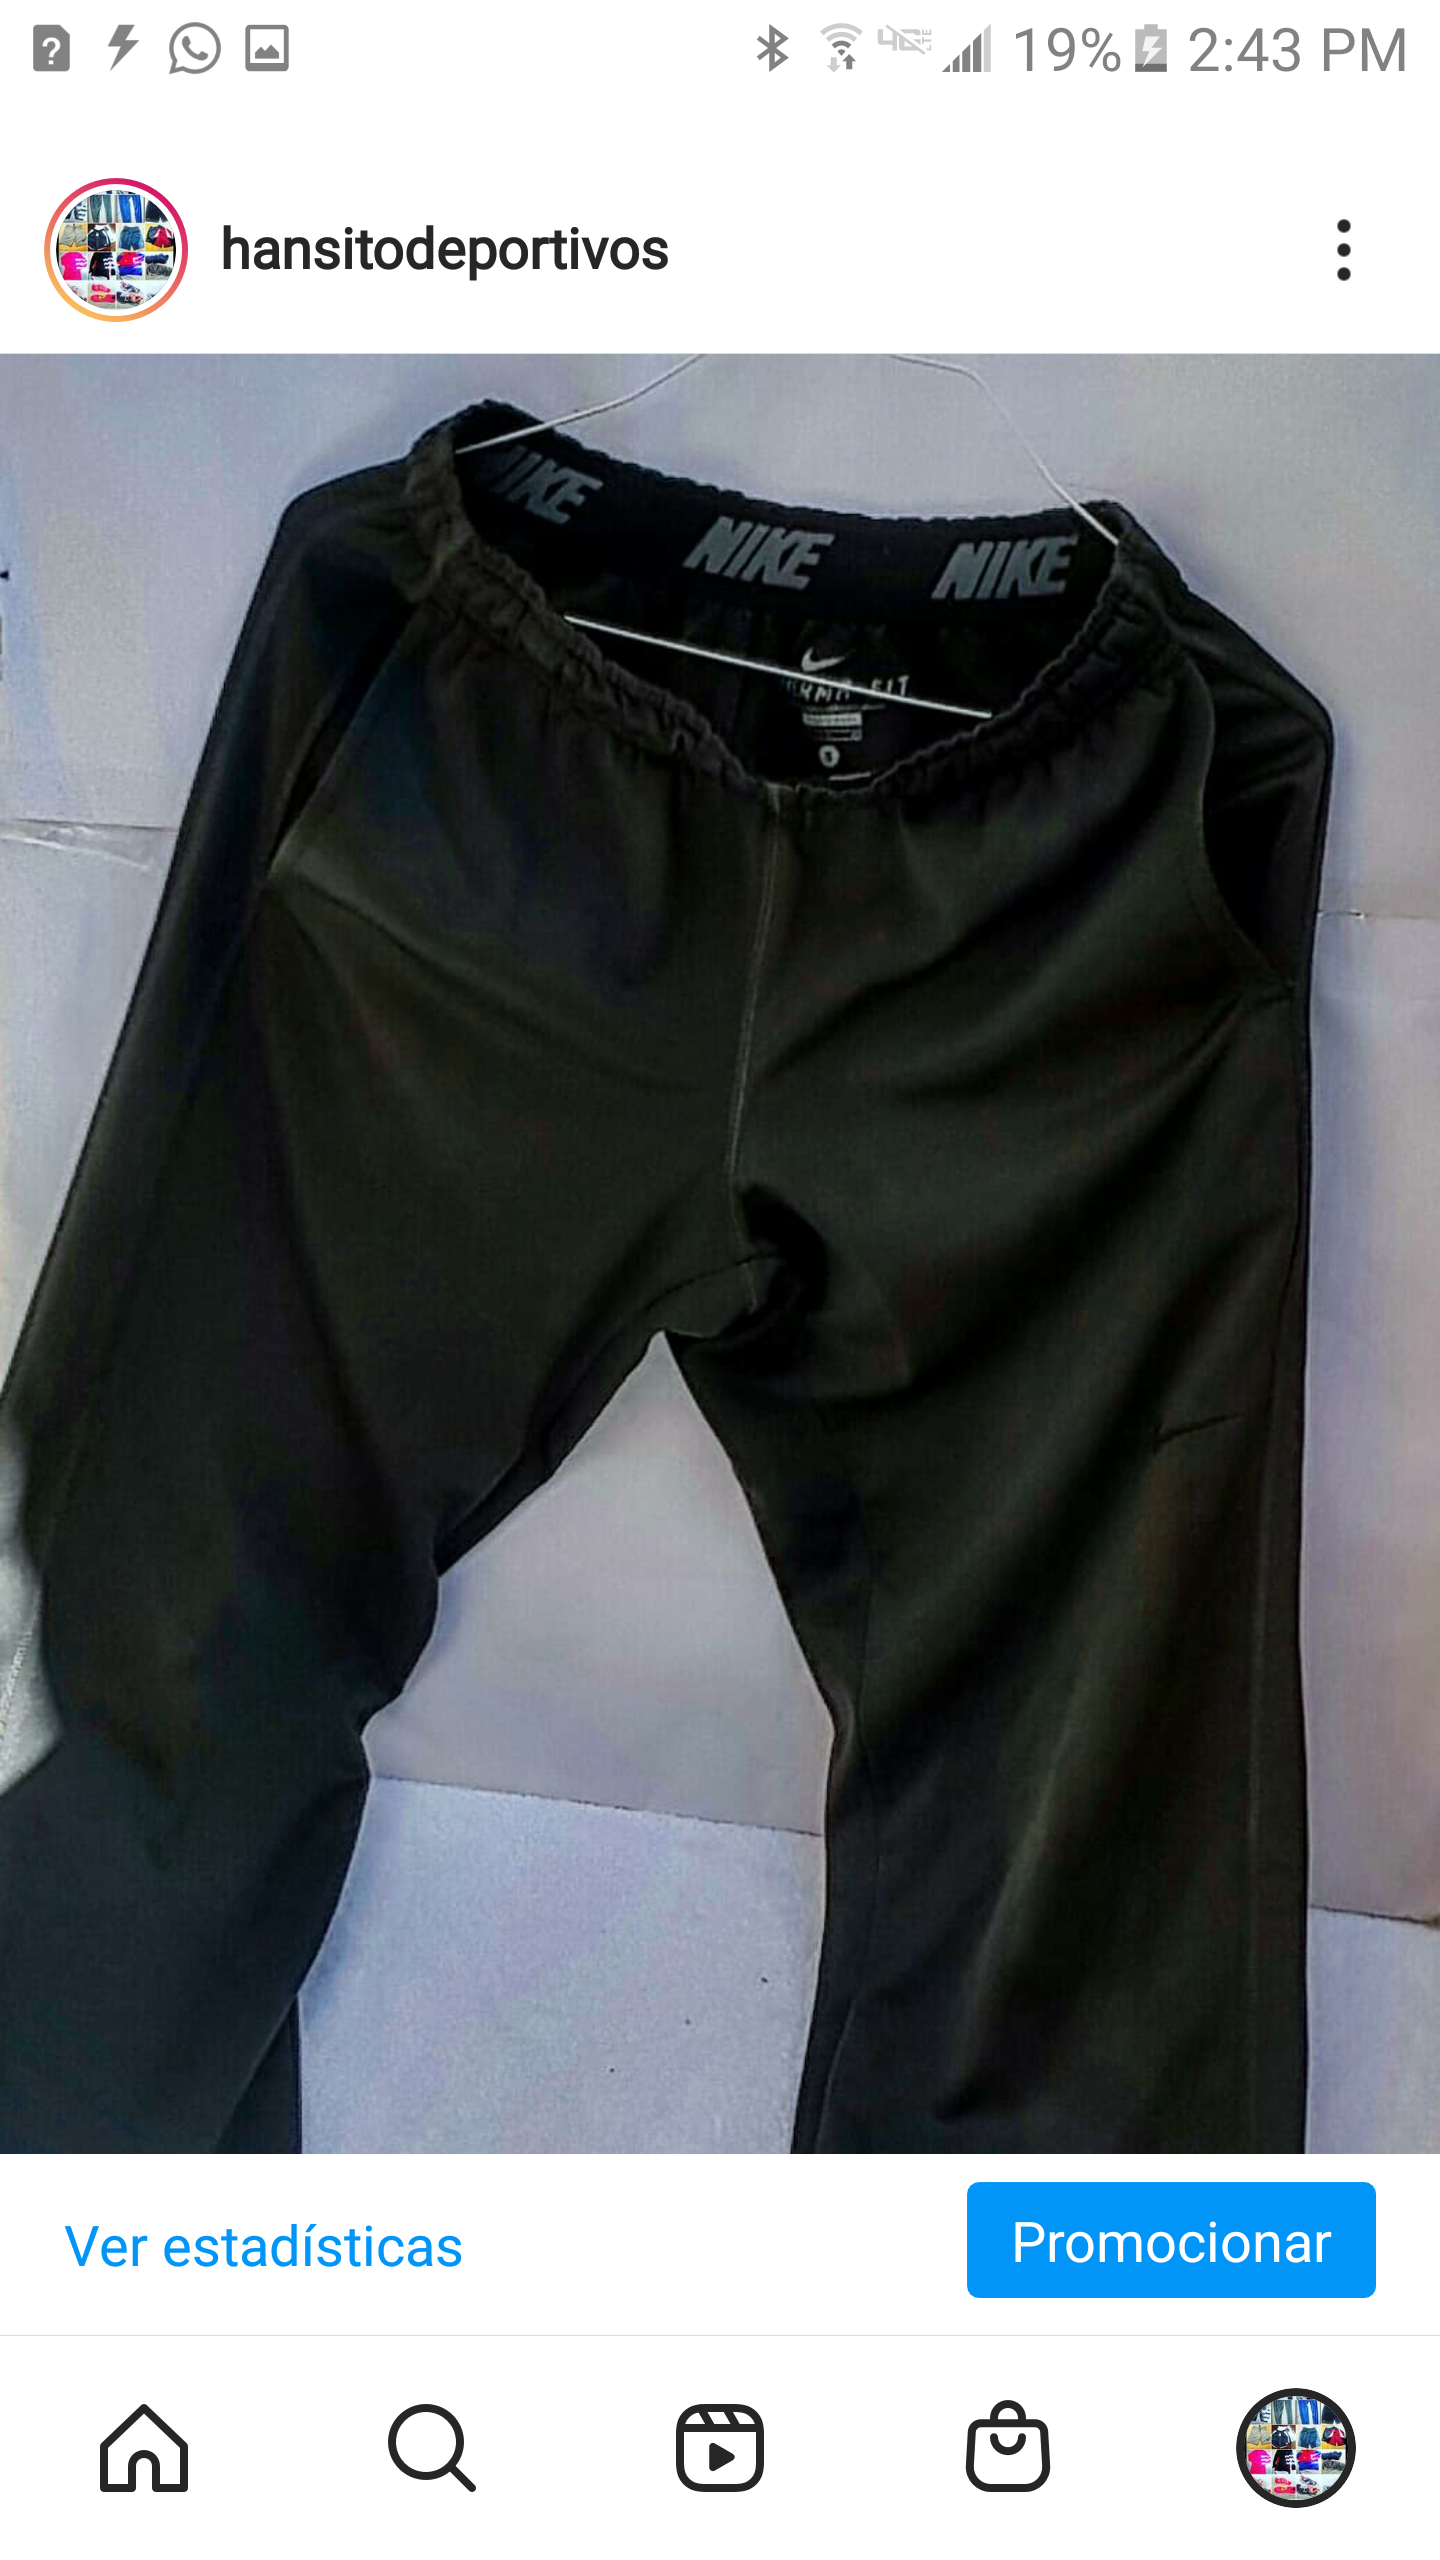 ropa para hombre - Pantalones deportivos para hacer ejercicios todos los Size / 900 pesos